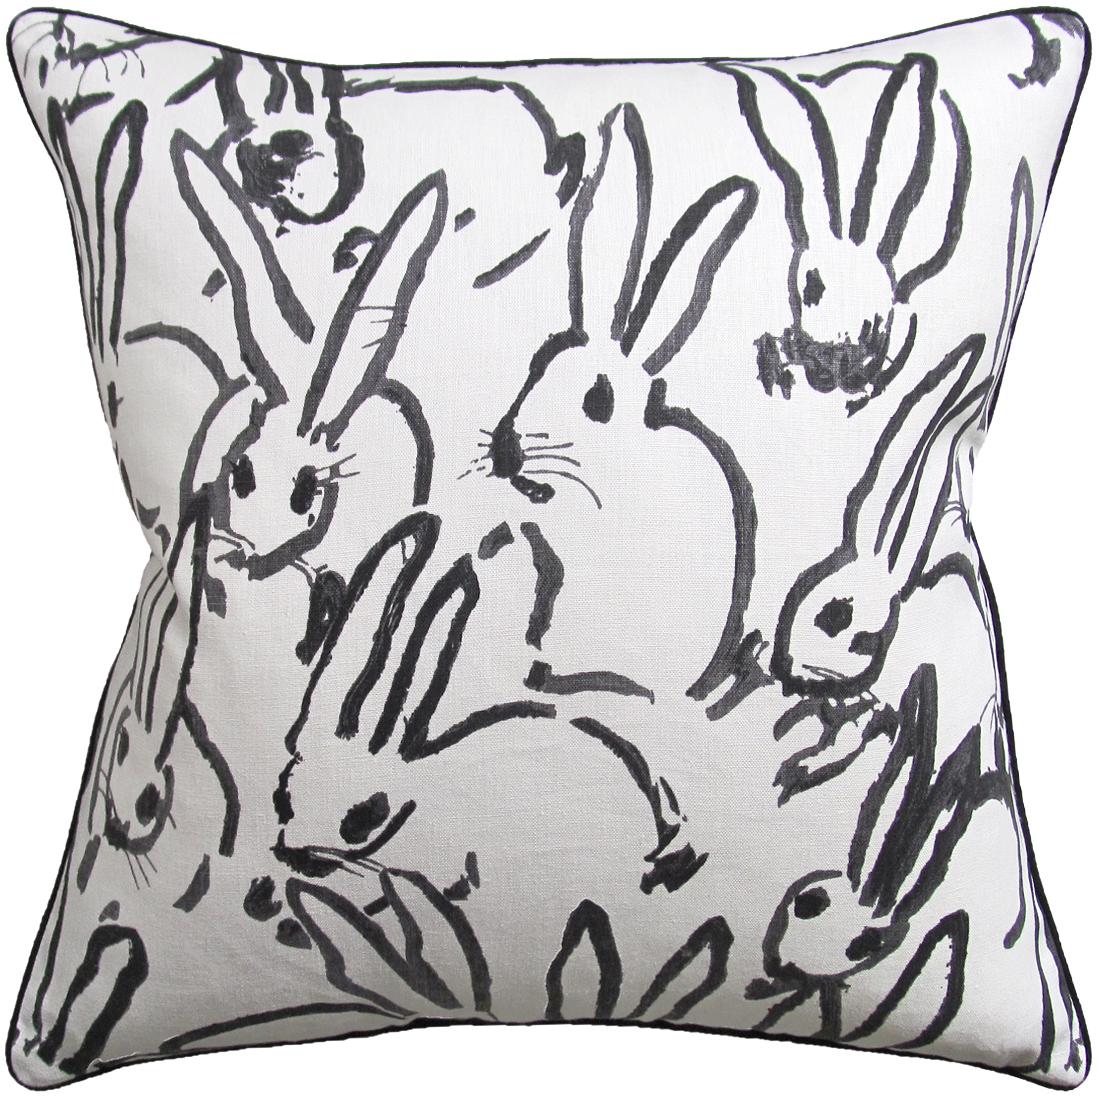 Bunnies Black Pillows-$298.00